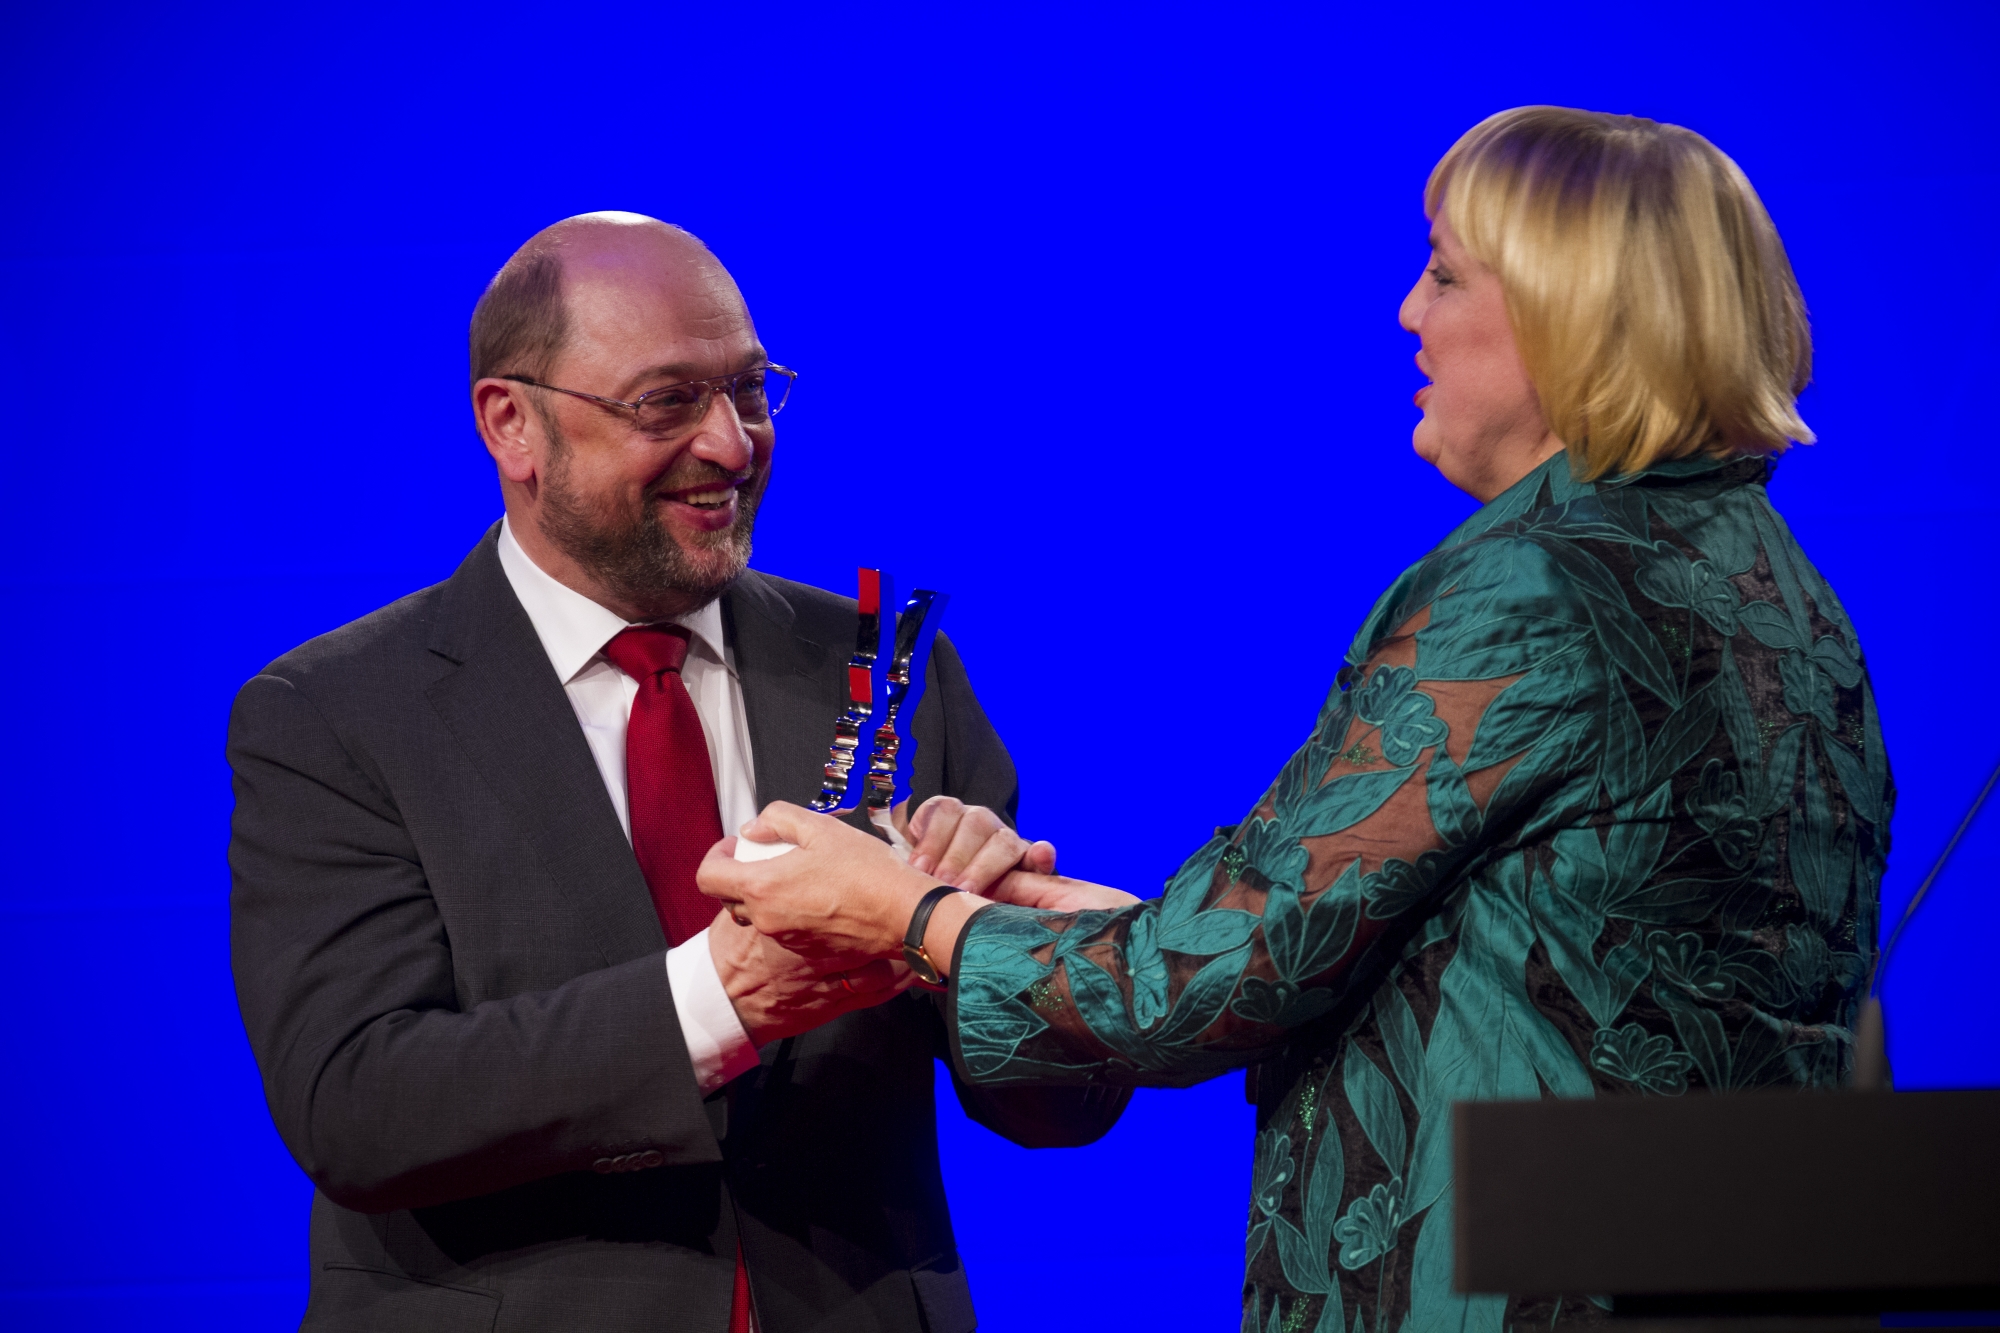 Claudia Roth überreicht Martin Schulz auf dem Politiksaward 2013 die Auszeichnung "Politiker des Jahres". Foto: Stephan Baumann